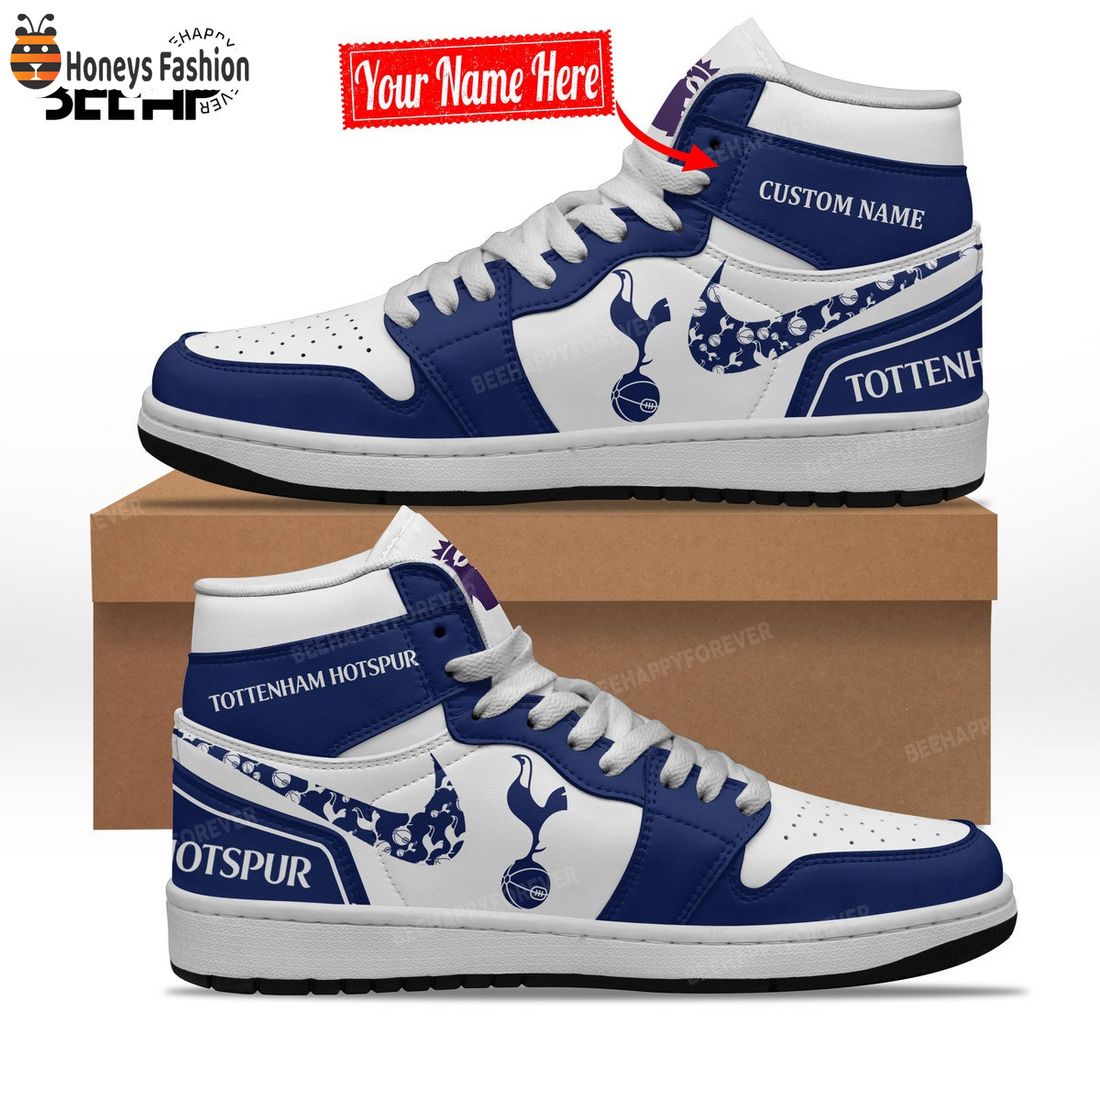 Tottenham Hotspur Custom Name Nike Air Jordan 1 Shoes